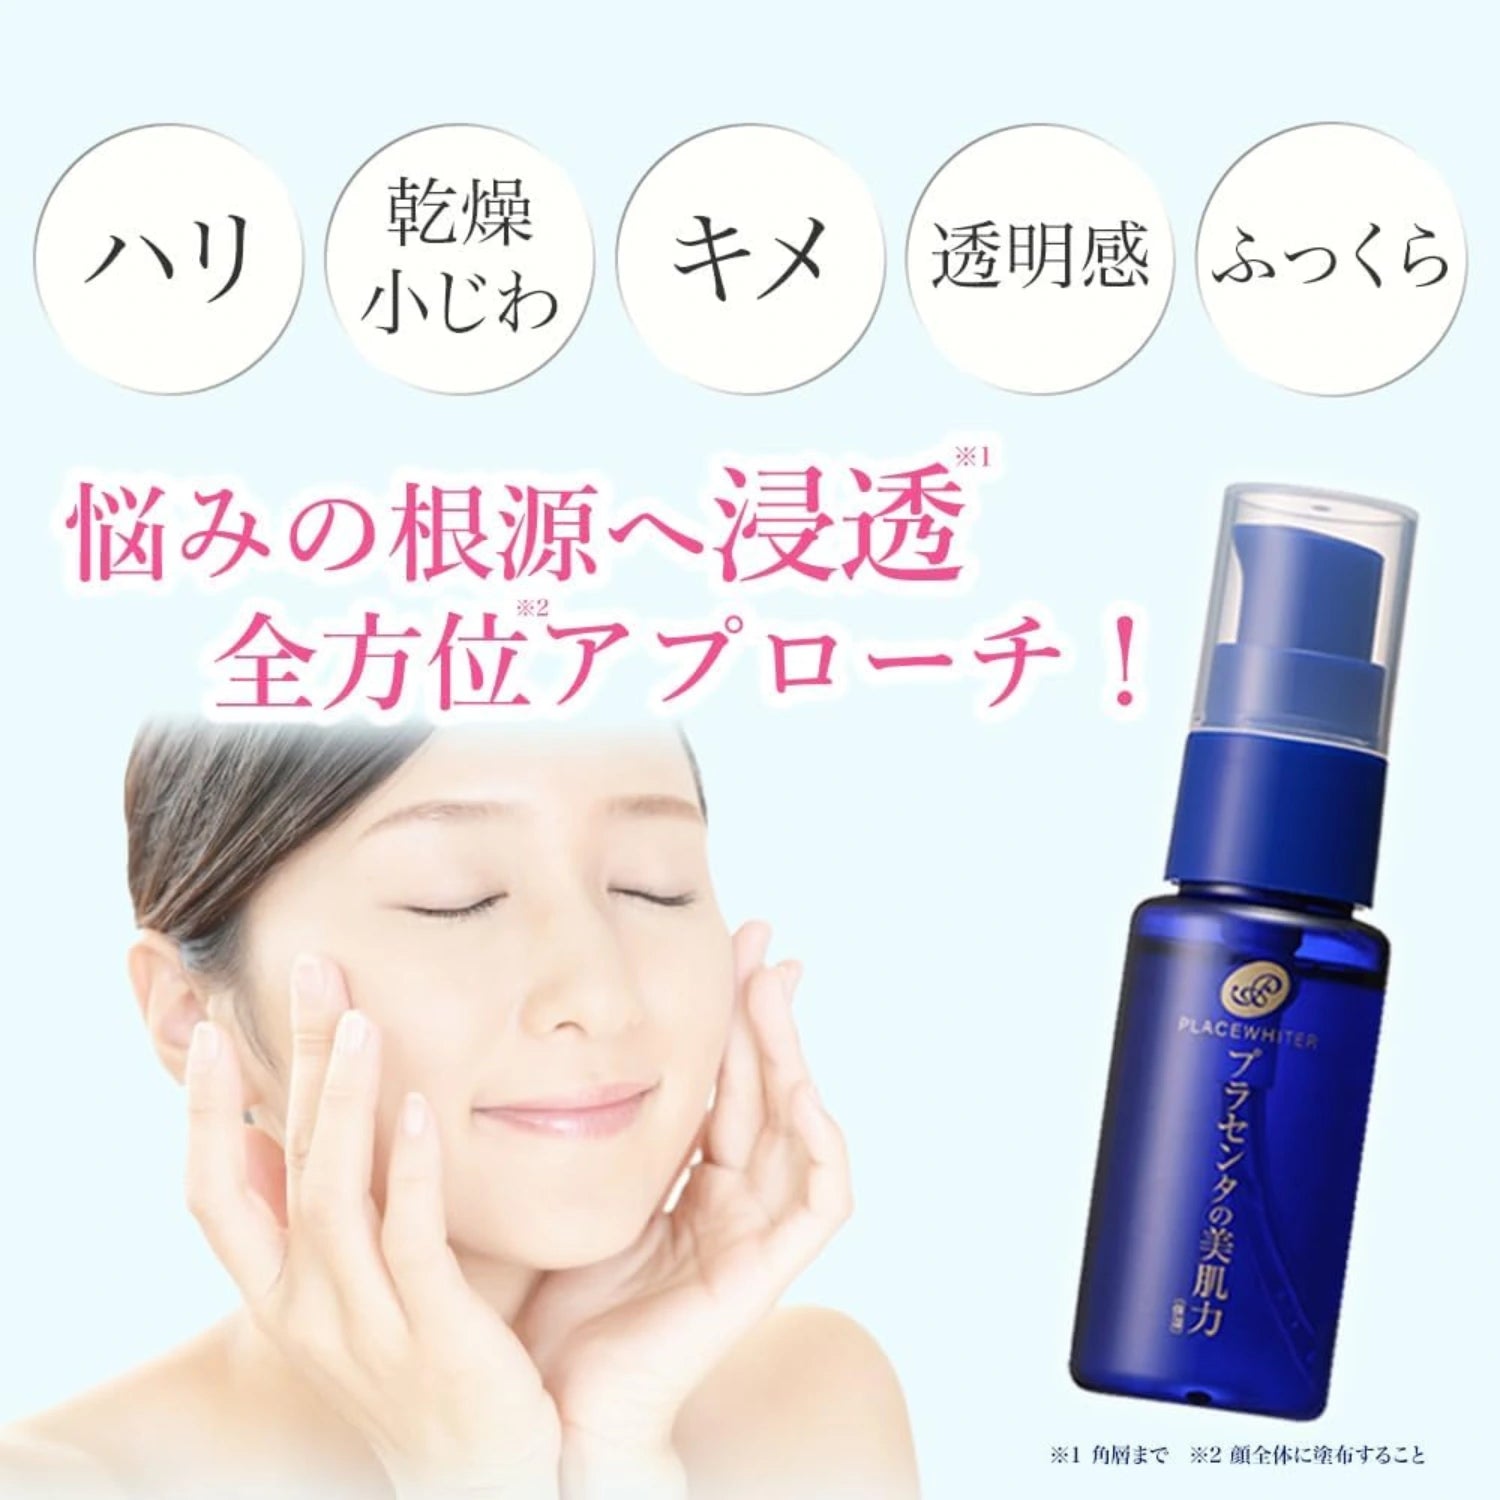 Meishoku Placenta Whitening Essence Serum 30ml - Buy Me Japan